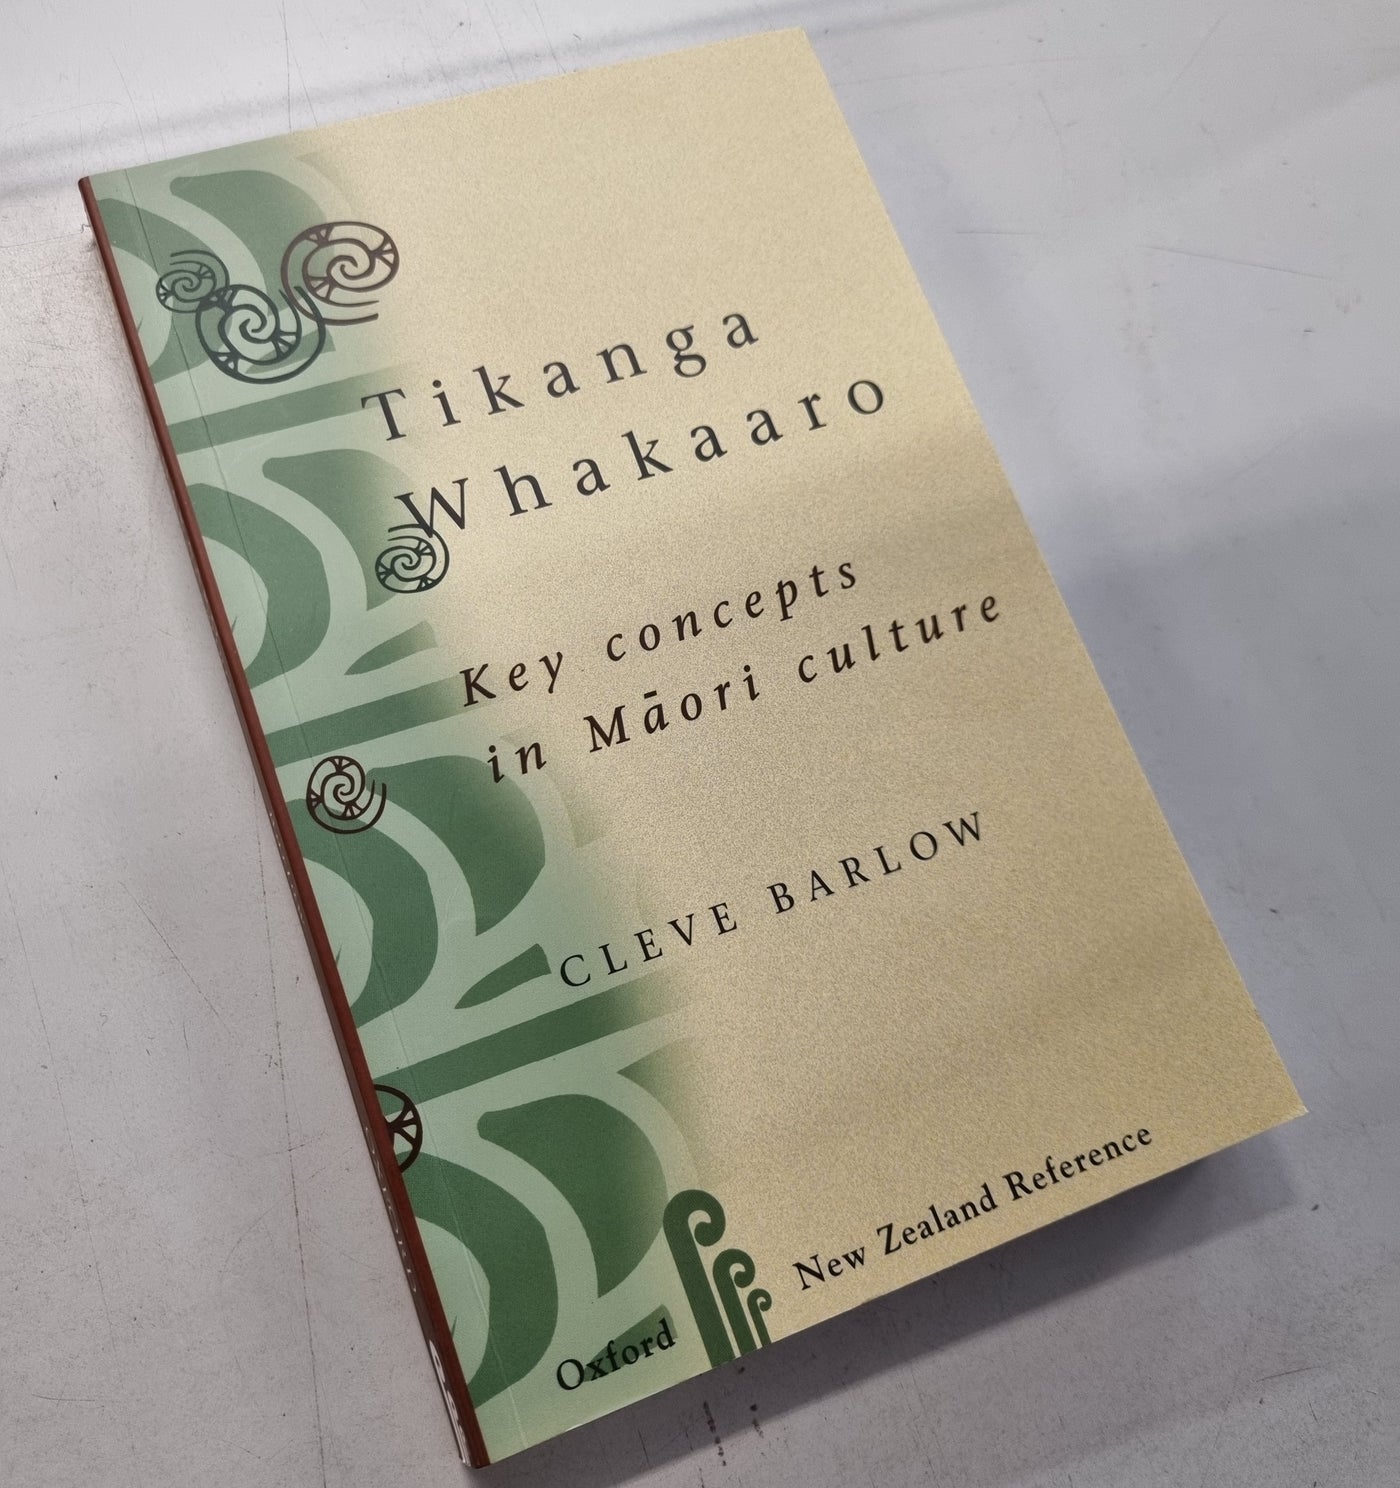 Tikanga Whakaaro: Key Concepts in Māori Culture